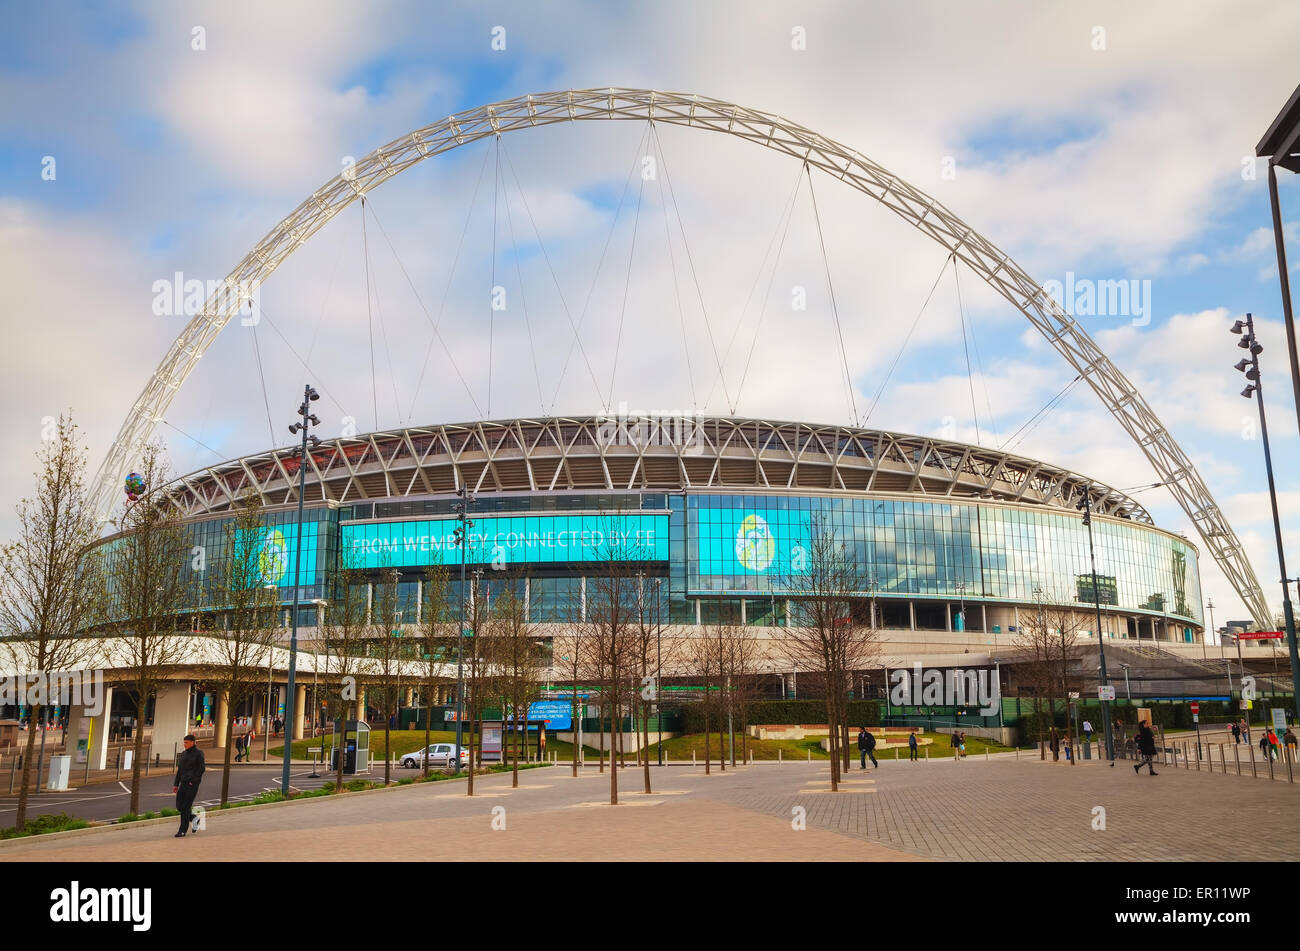 LONDON - APRIL 6: Wembley-Stadion am 6. April 2015 in London, Vereinigtes Königreich. Es ist ein Fußballstadion in Wembley Park, das 2007 eröffnet Stockfoto